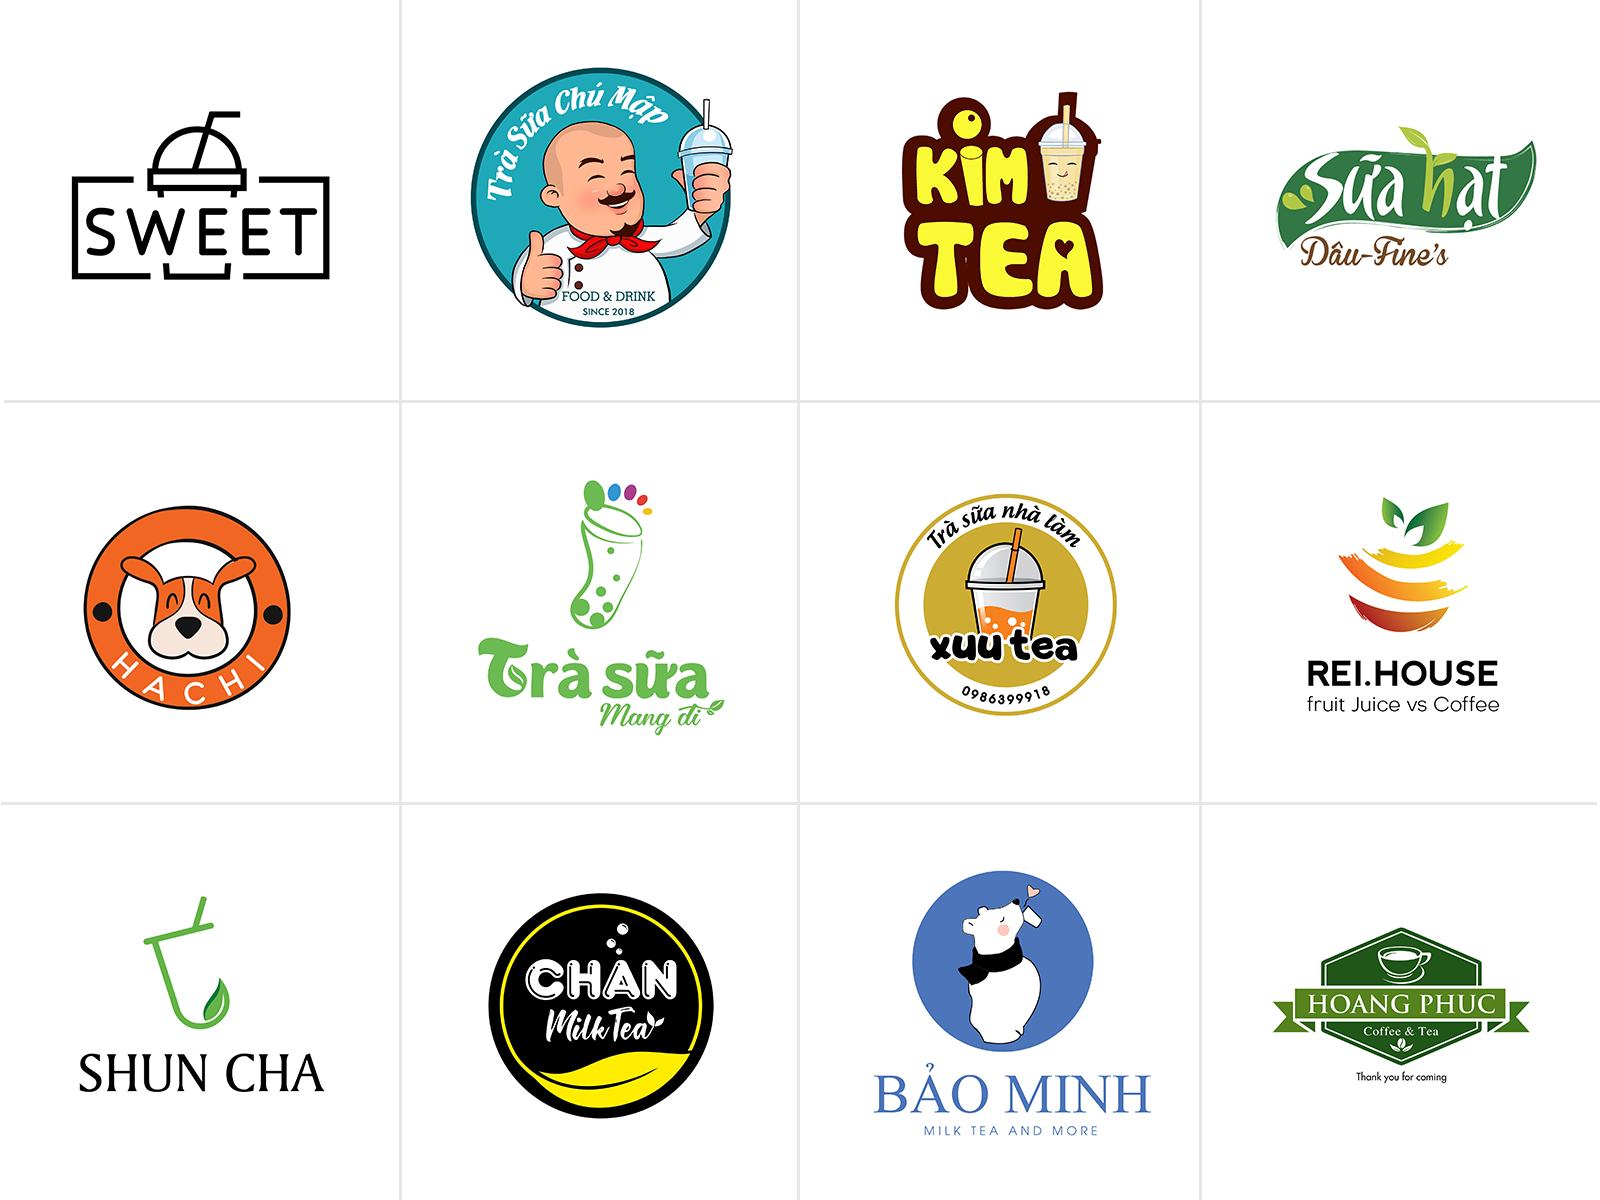 Thiết kế logo trà sữa: Trà sữa đang trở thành một trong những thức uống được ưa chuộng tại Việt Nam. Để nổi bật giữa đám đông, các thương hiệu trà sữa cần có một logo đẹp và phù hợp với mình. Thiết kế logo trà sữa đòi hỏi sự sáng tạo và tinh thần tự do. Các nhà thiết kế đồ họa có thể tạo ra các logo trà sữa độc đáo, thu hút khách hàng và tạo sự khác biệt cho thương hiệu trà sữa của mình.